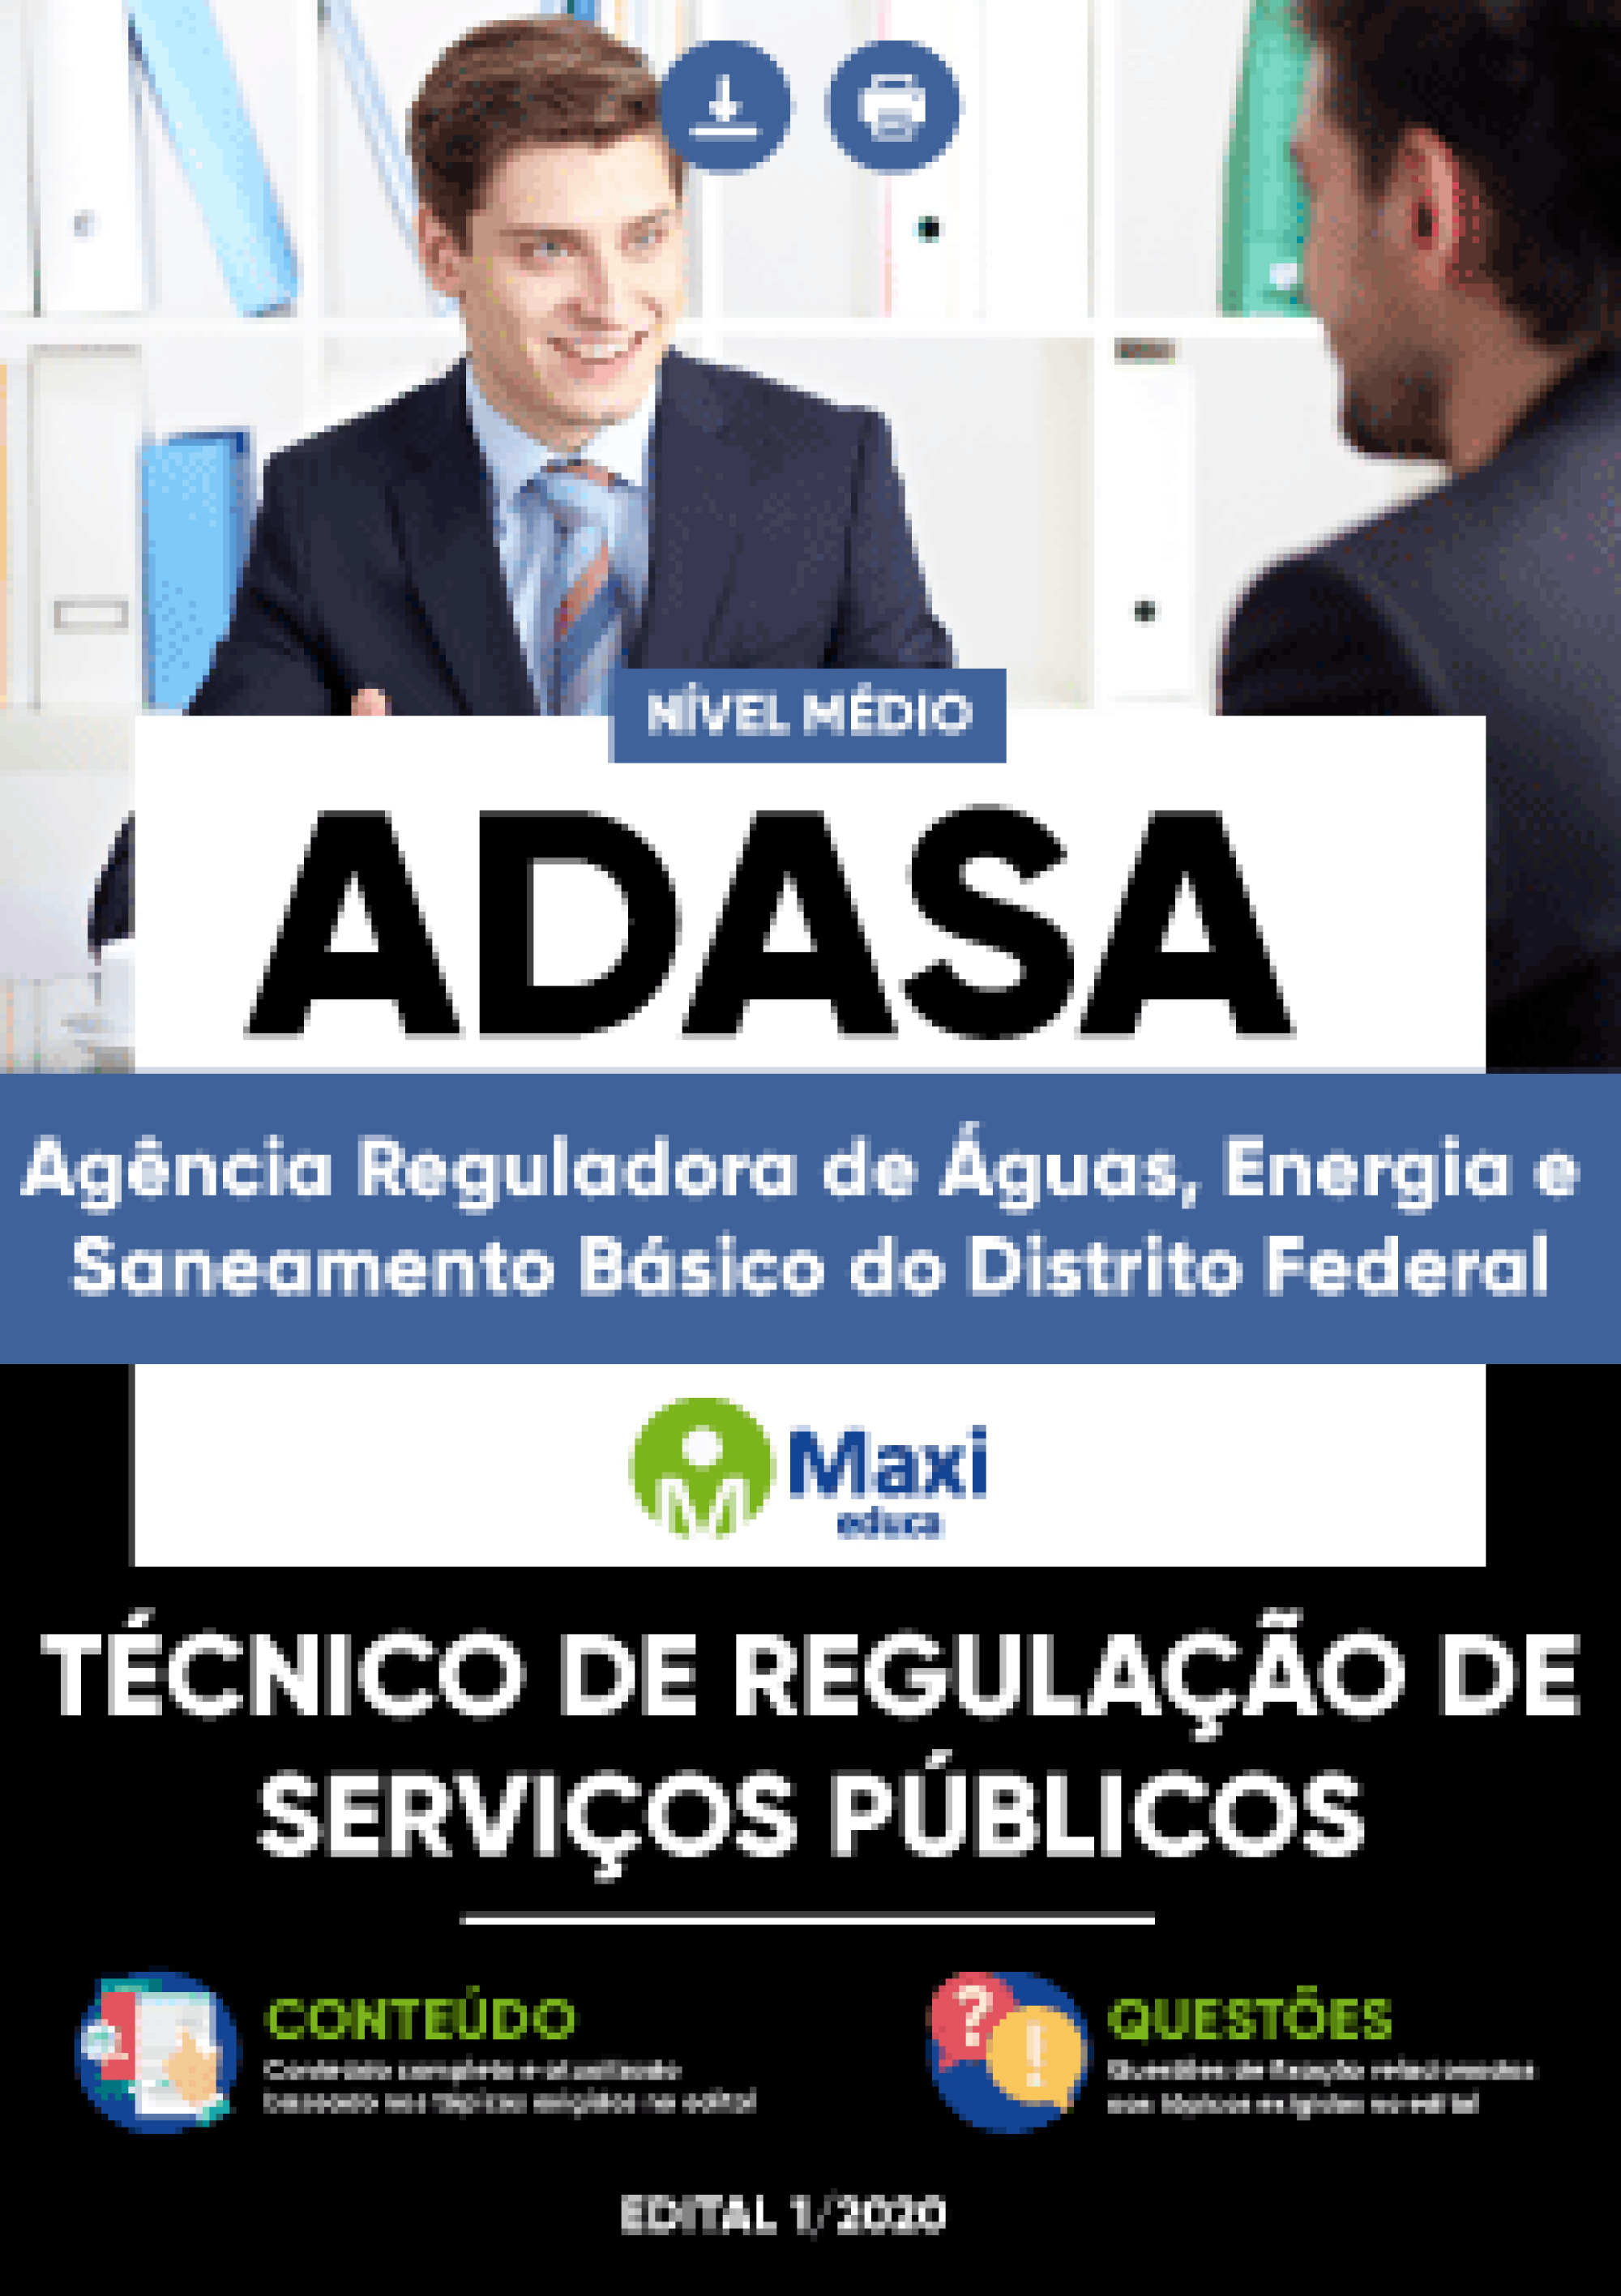 Apostila Digital em PDF da Agência Reguladora de Águas, Energia e Saneamento Básico do Distrito Federal) - ADASA